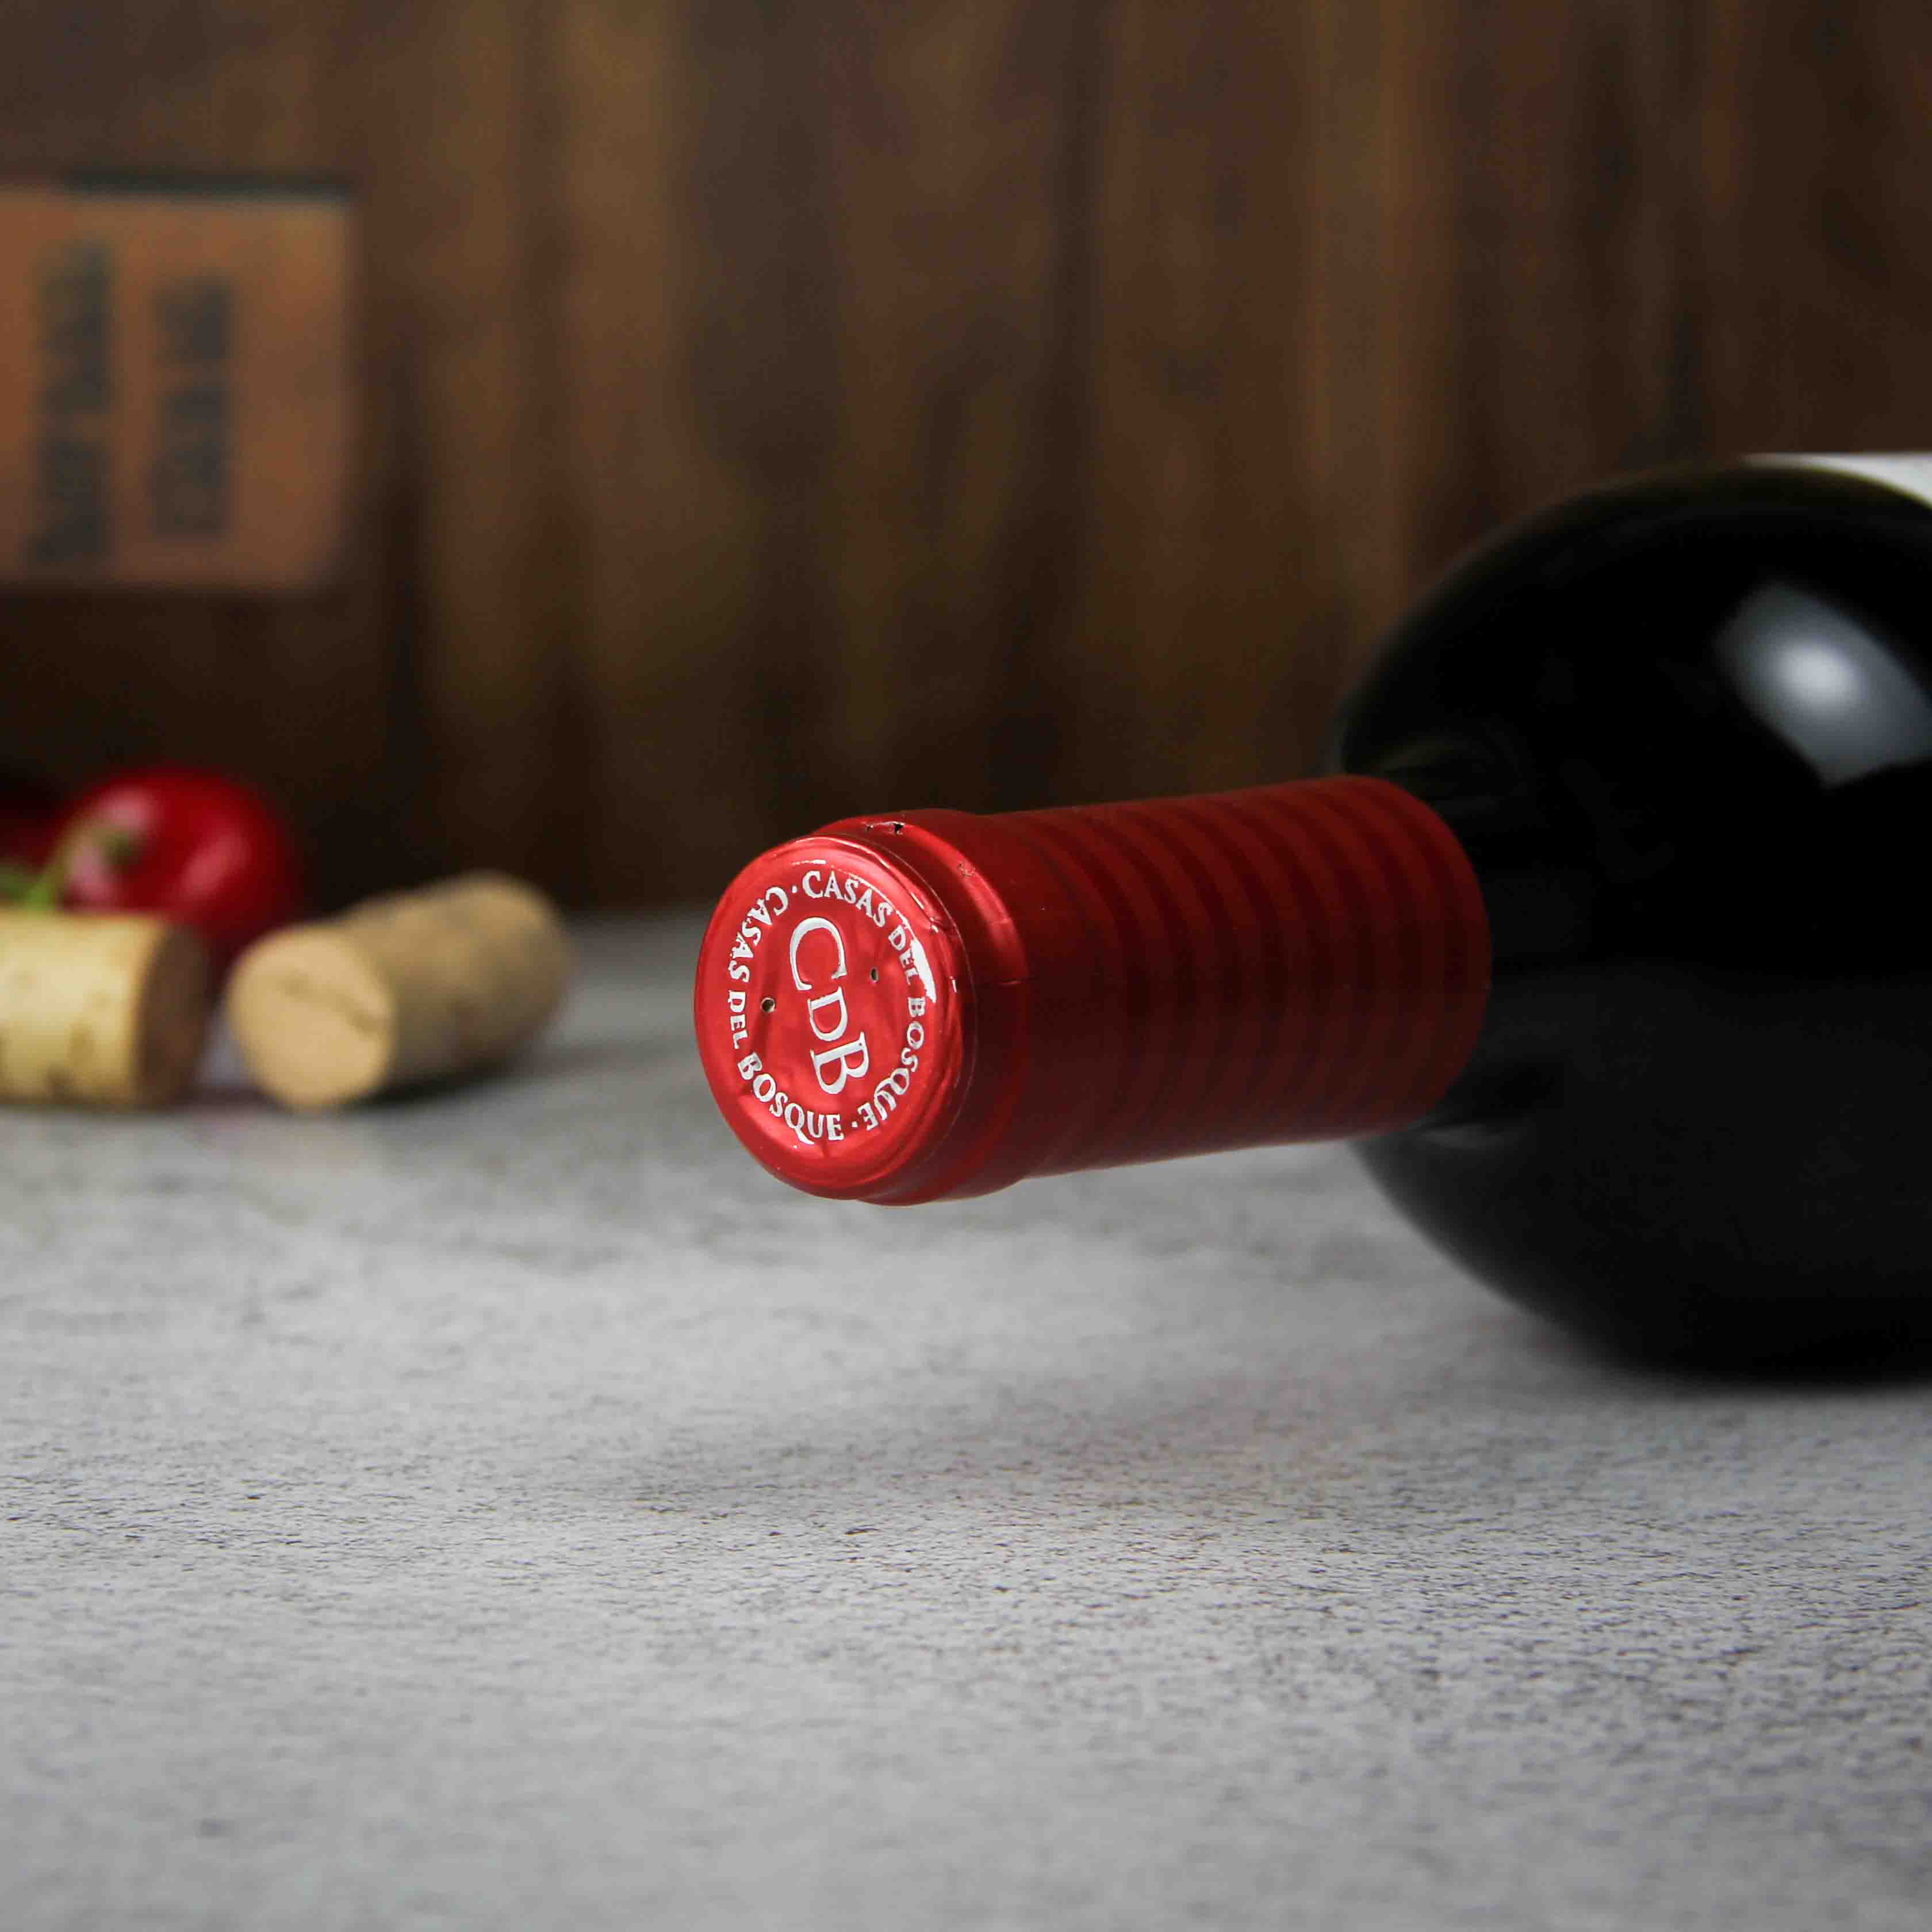 智利兰佩谷卡萨伯斯克珍藏赤霞珠红葡萄酒红酒